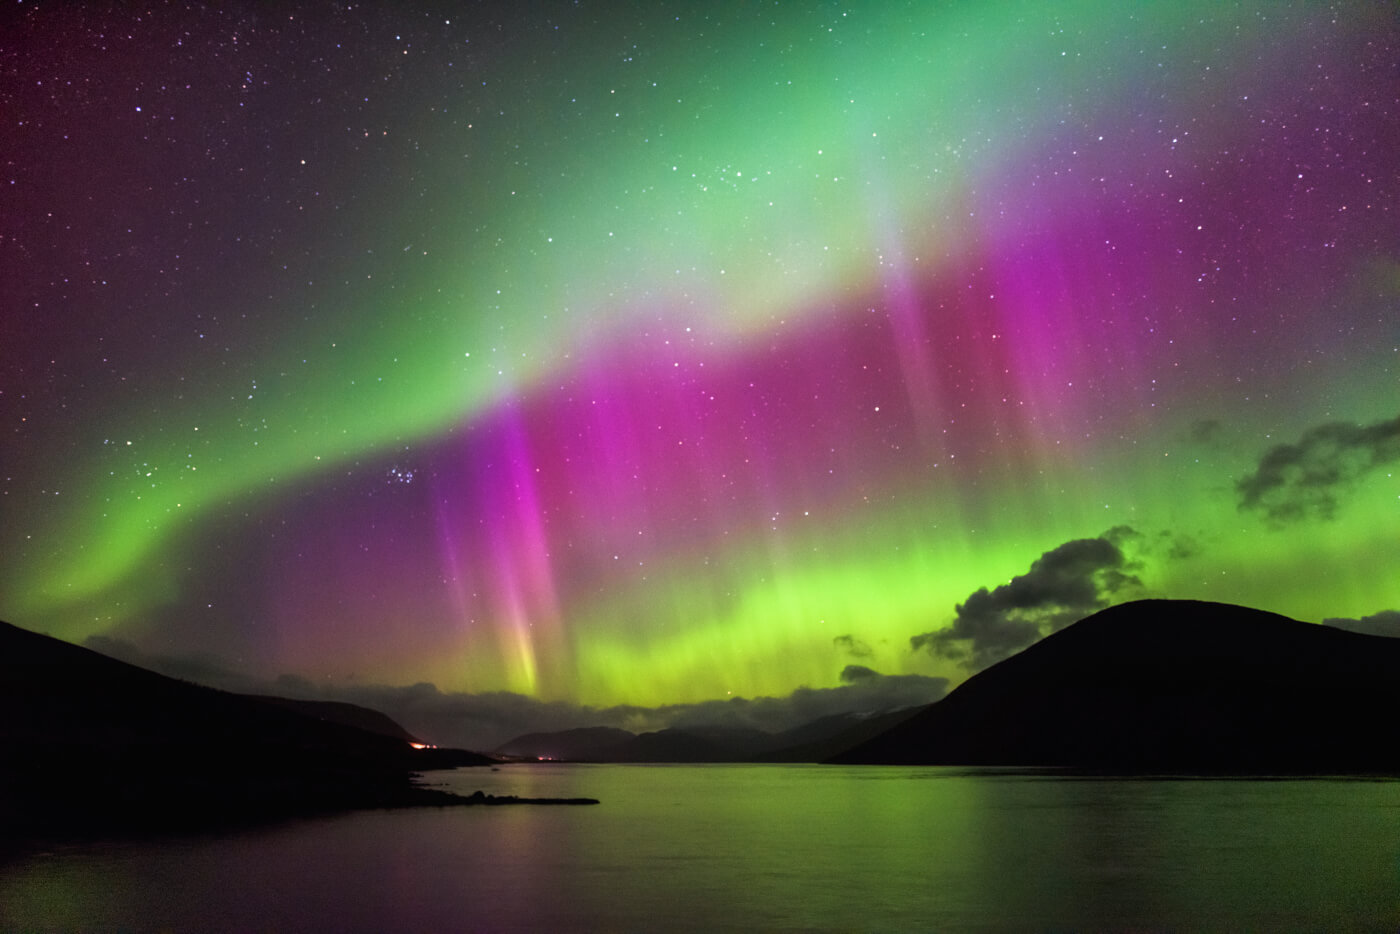 Địa điểm ngắm cực quang đẹp nhất: Scotland, Shetland (Ảnh: Internet)